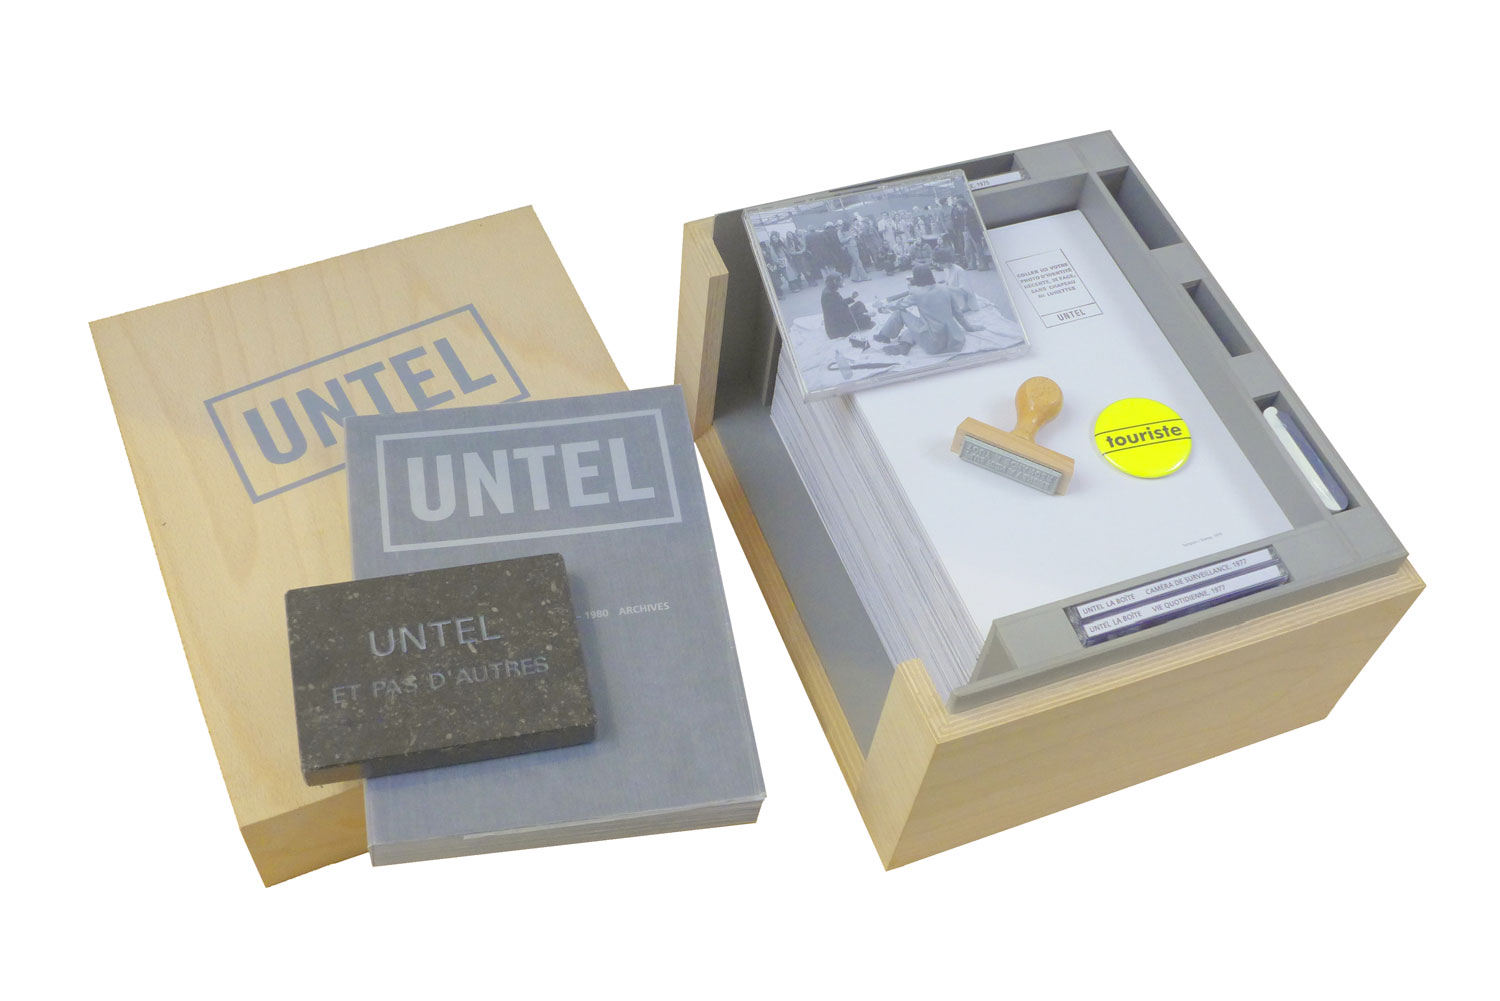 UNTEL - LA BOITE UNTEL, 1975/2013